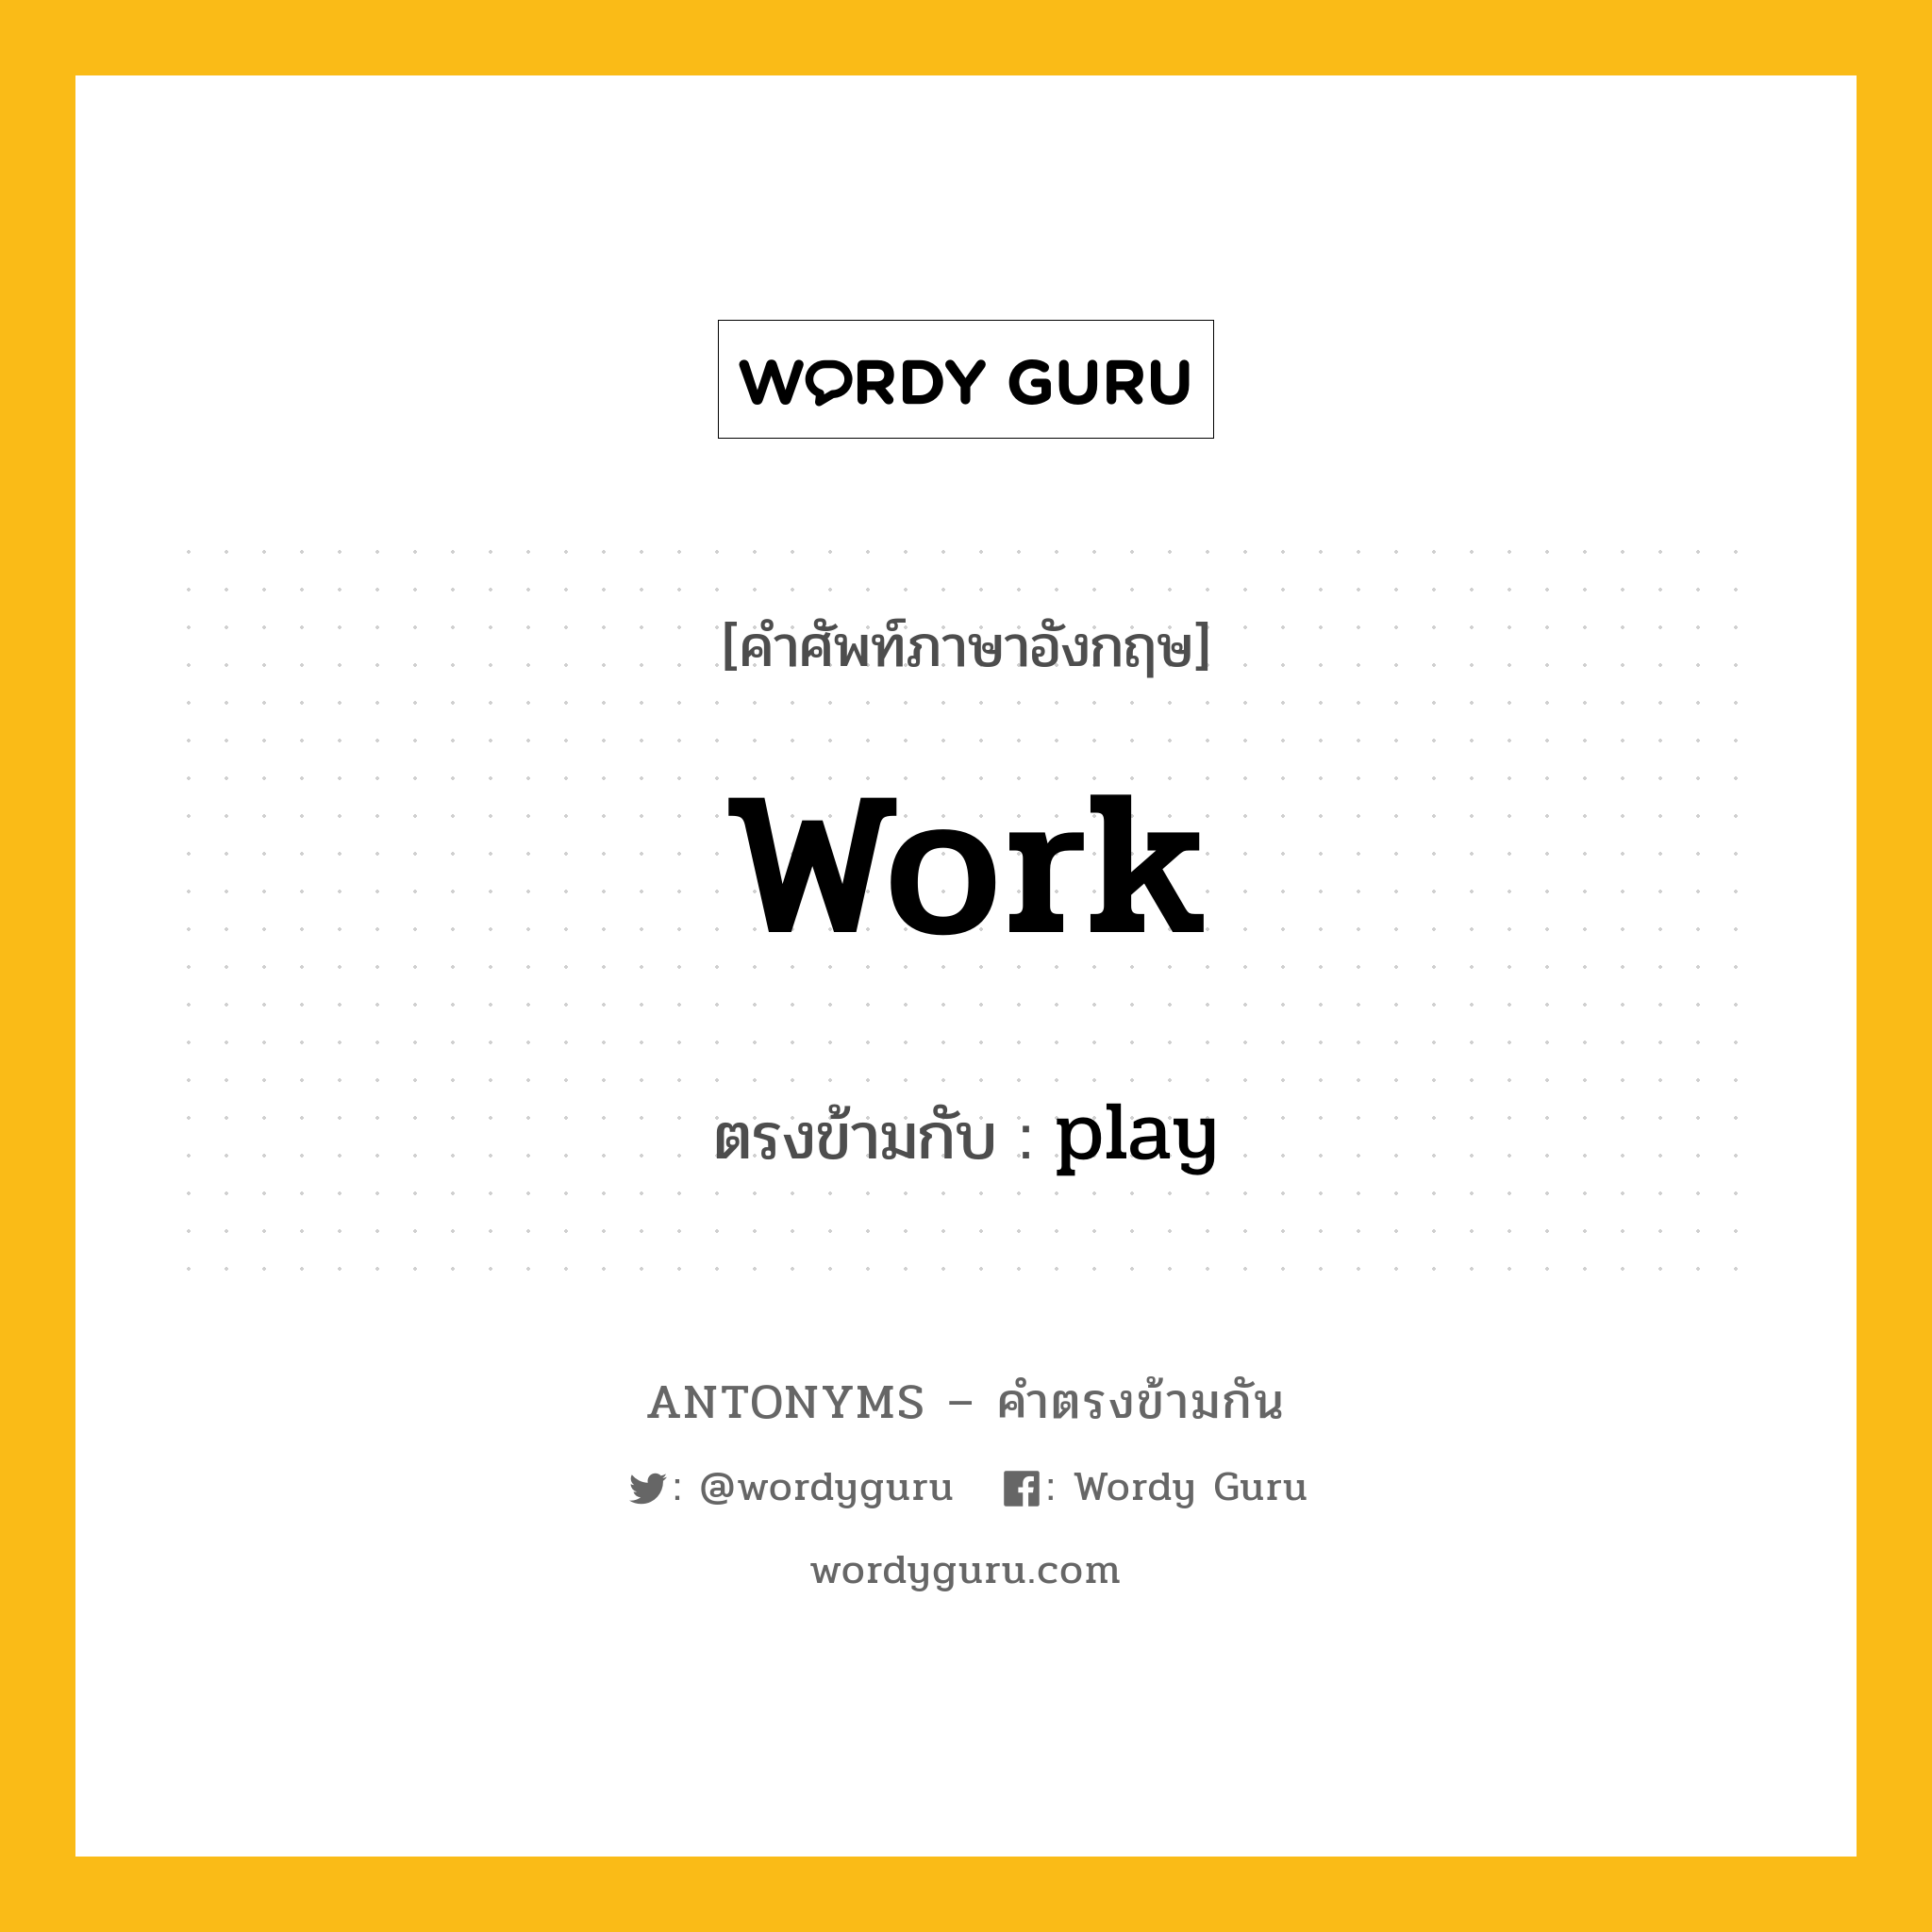 work เป็นคำตรงข้ามกับคำไหนบ้าง?, คำศัพท์ภาษาอังกฤษ work ตรงข้ามกับ play หมวด play